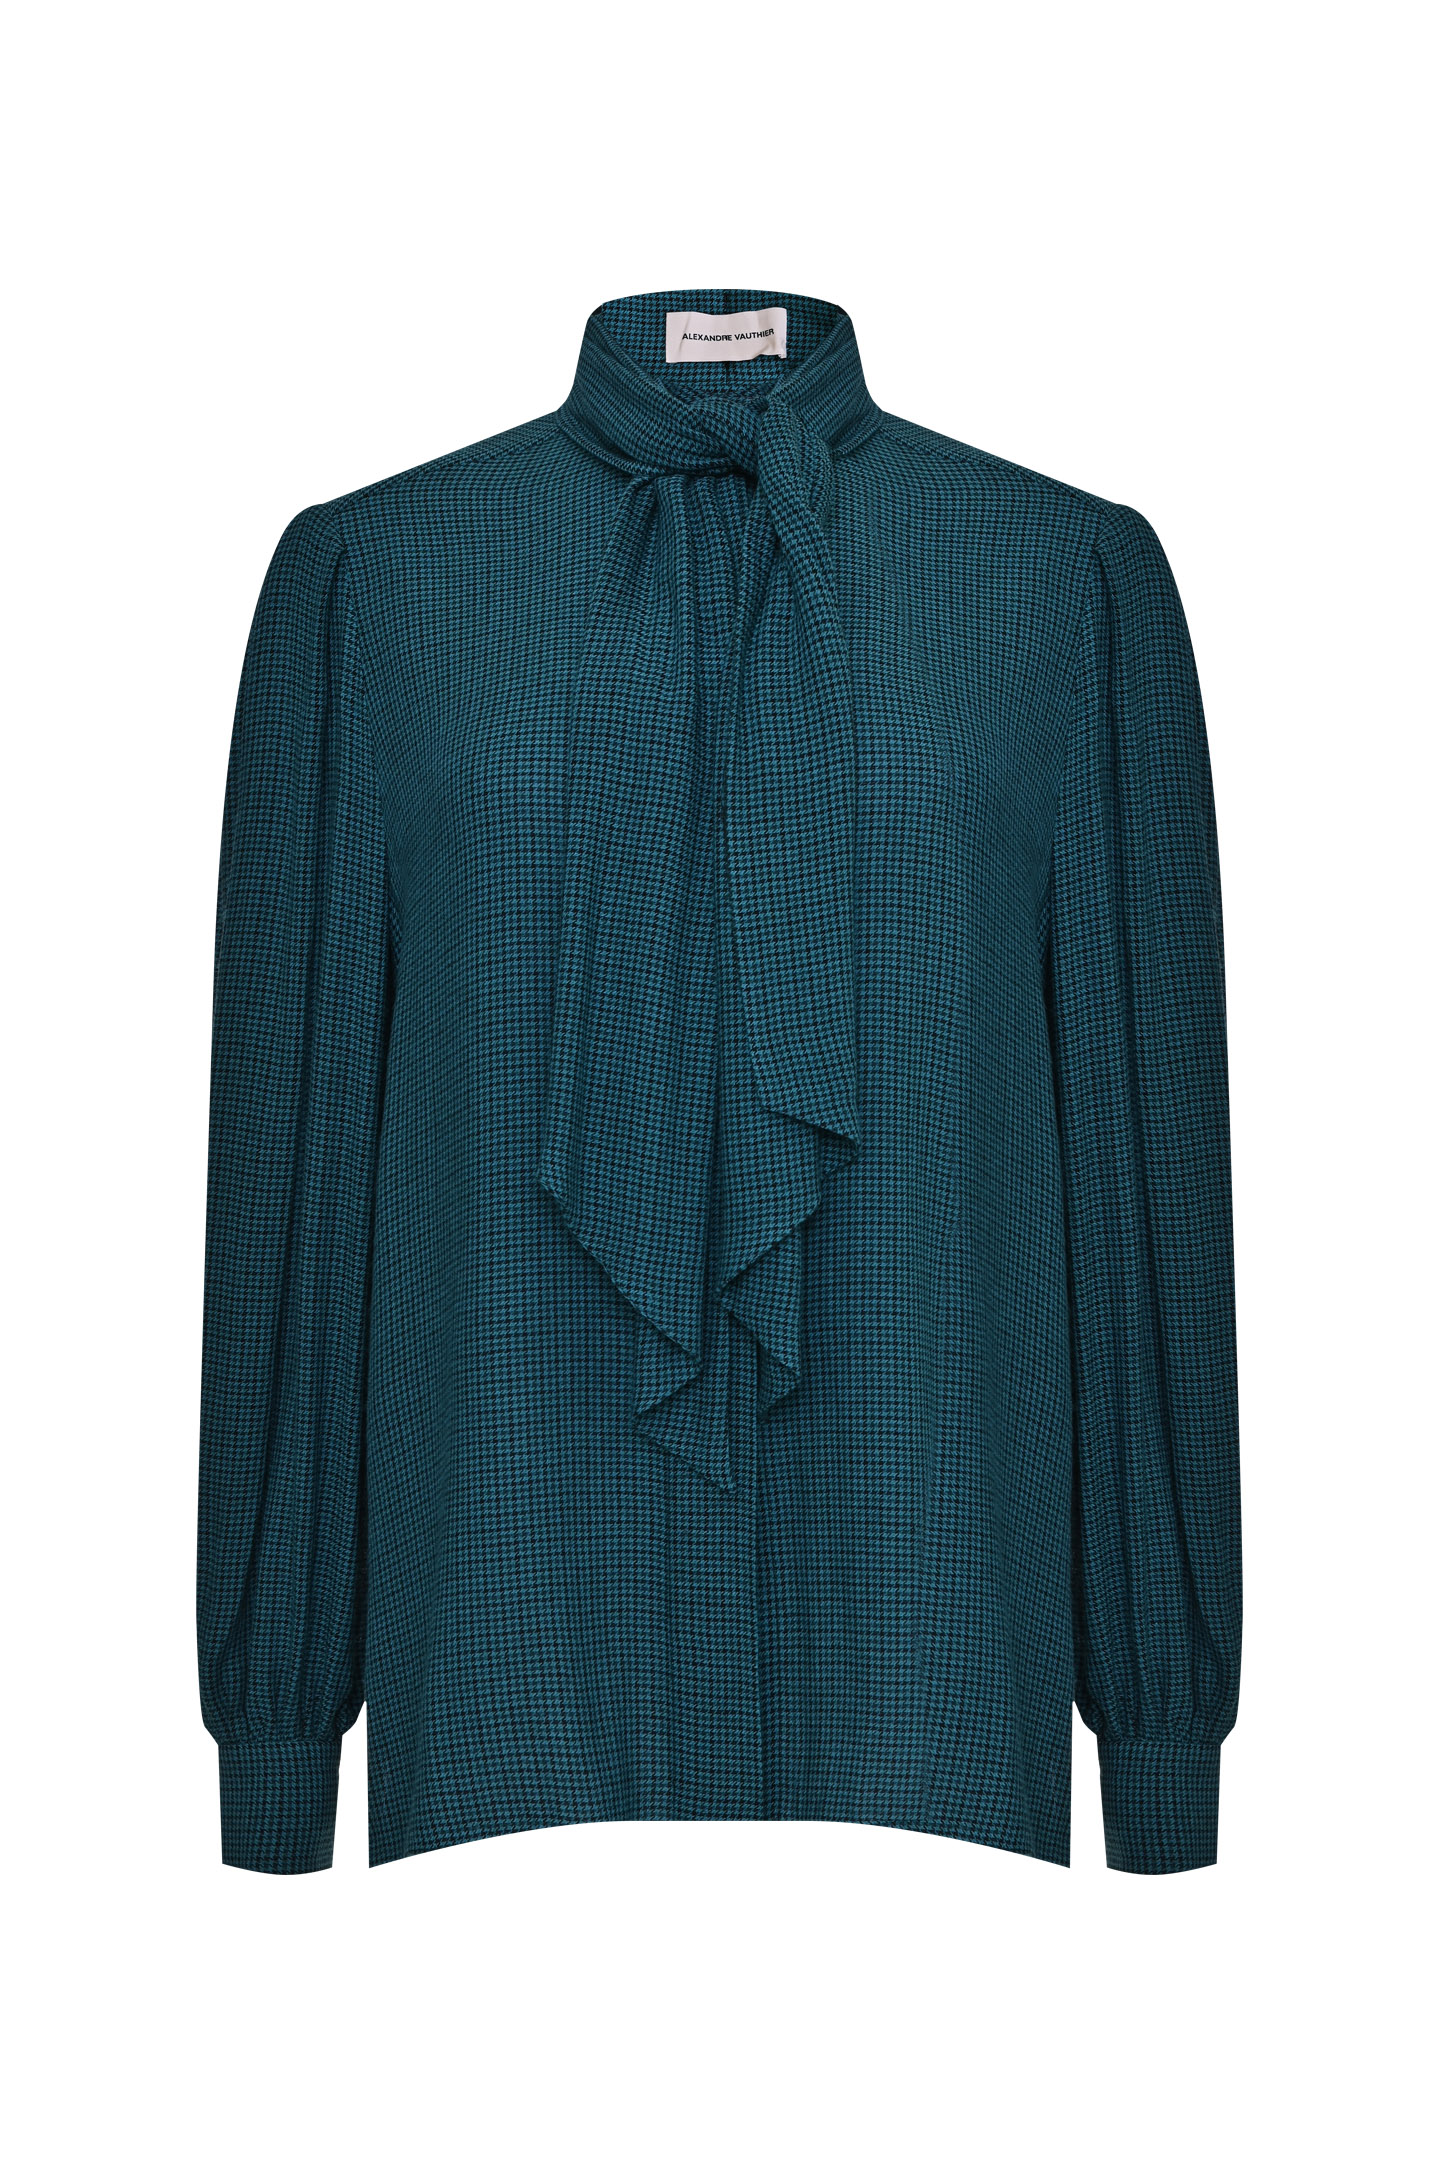 Блуза ALEXANDRE VAUTHIER 213SH1506, цвет: Бирюзовый, Женский